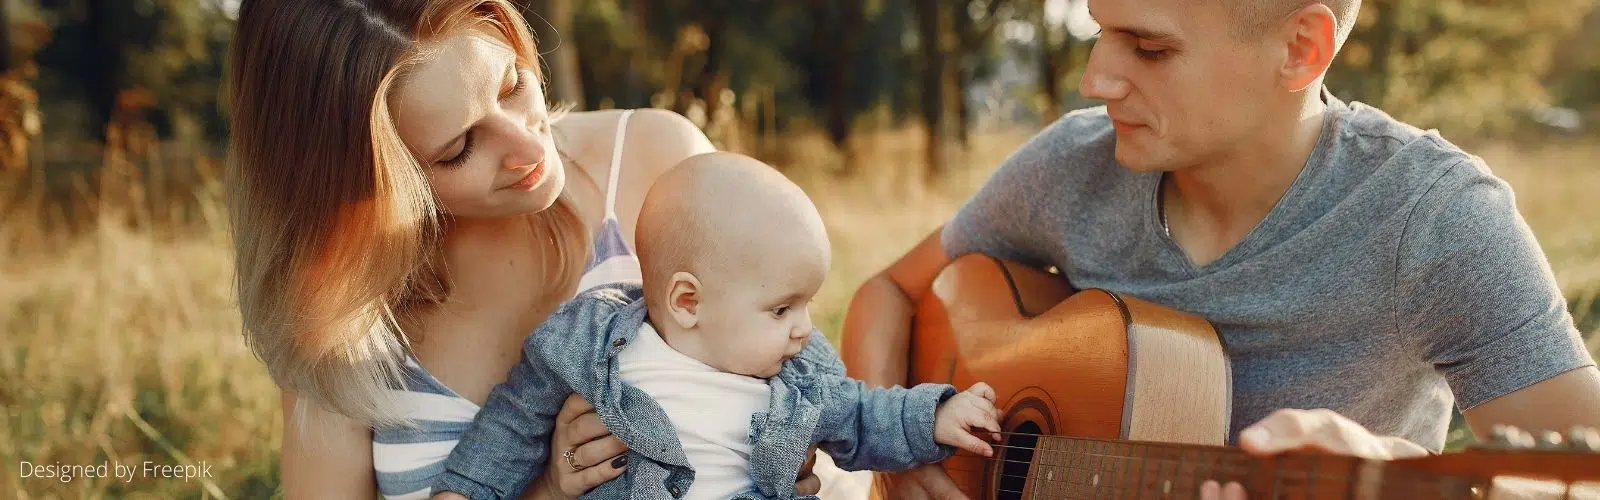 Éveil musical : faire aimer la musique aux enfants dès leur plus jeune âge !